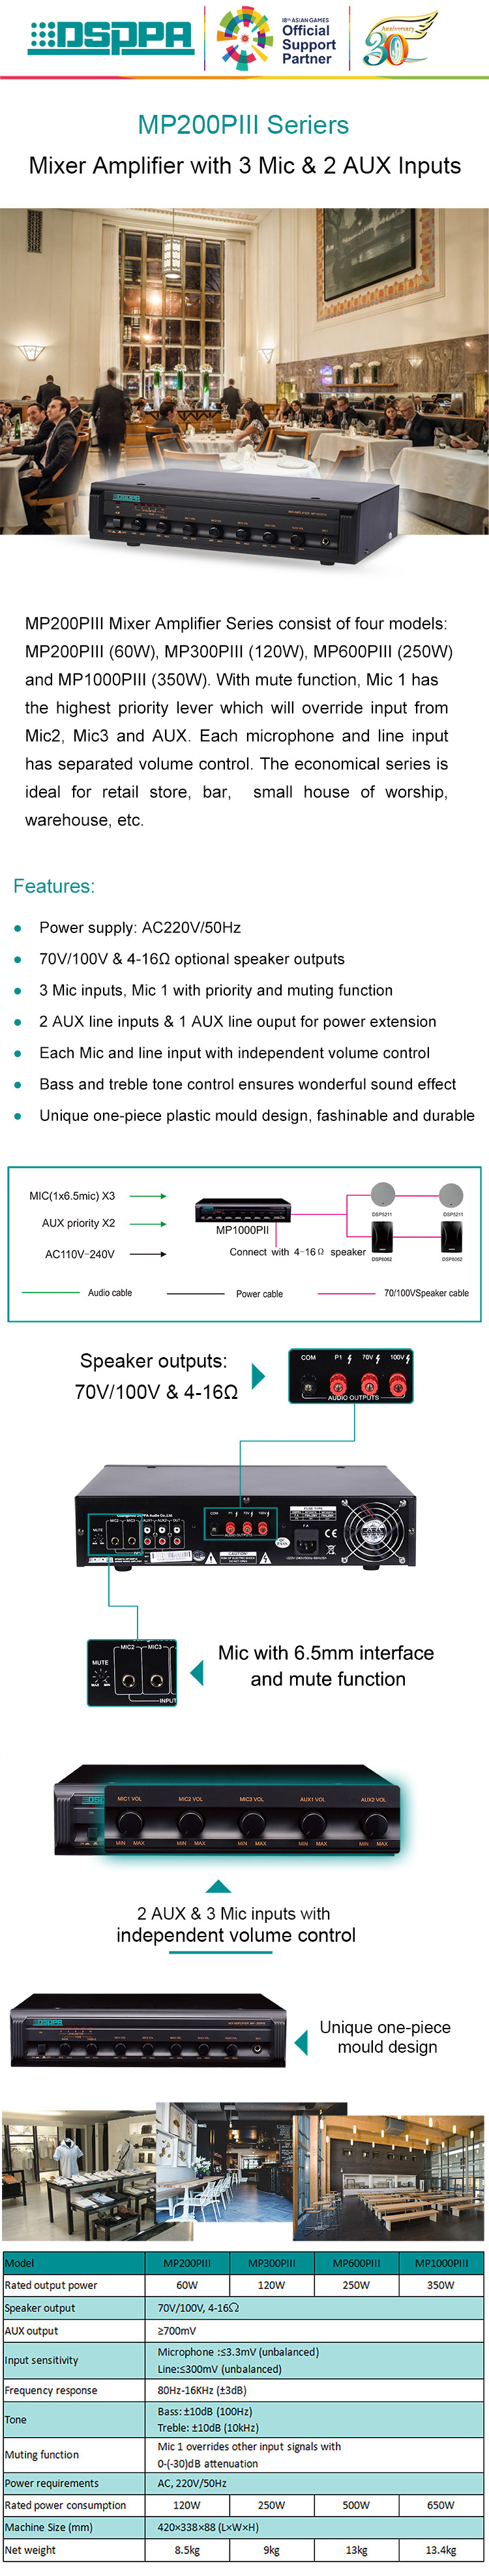 MP1000PIII 350W 3 Mic&2 AUX Mixing Amplifier